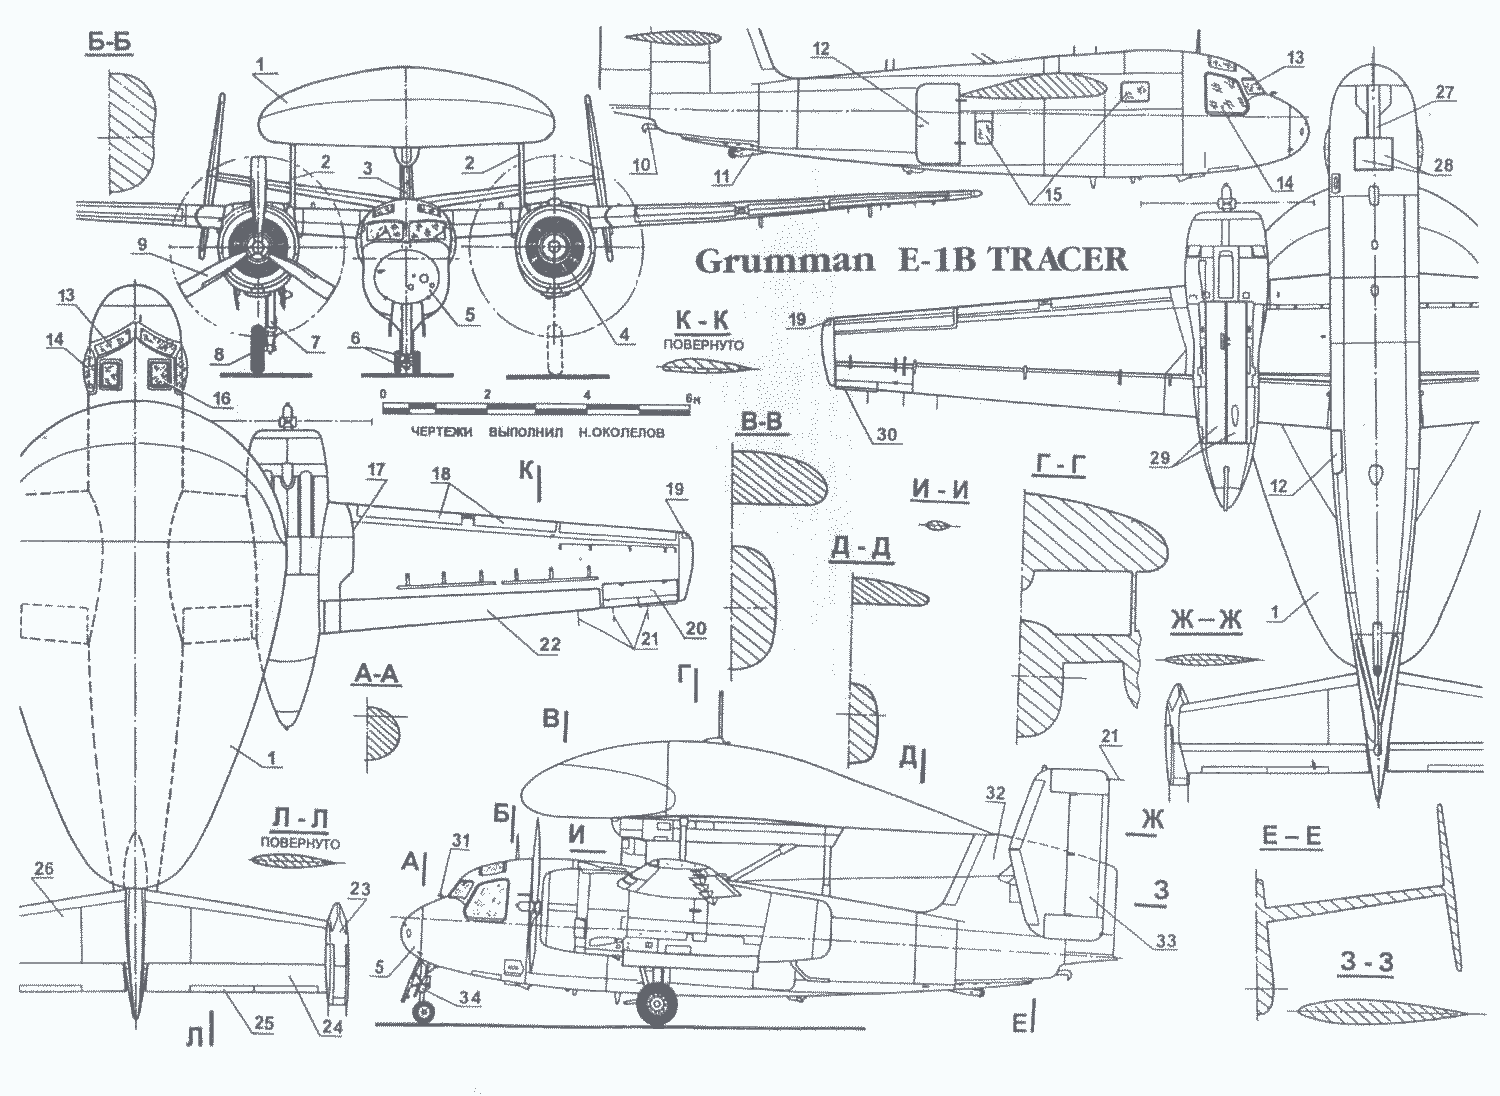 Grumman E-1 Tracer blueprint